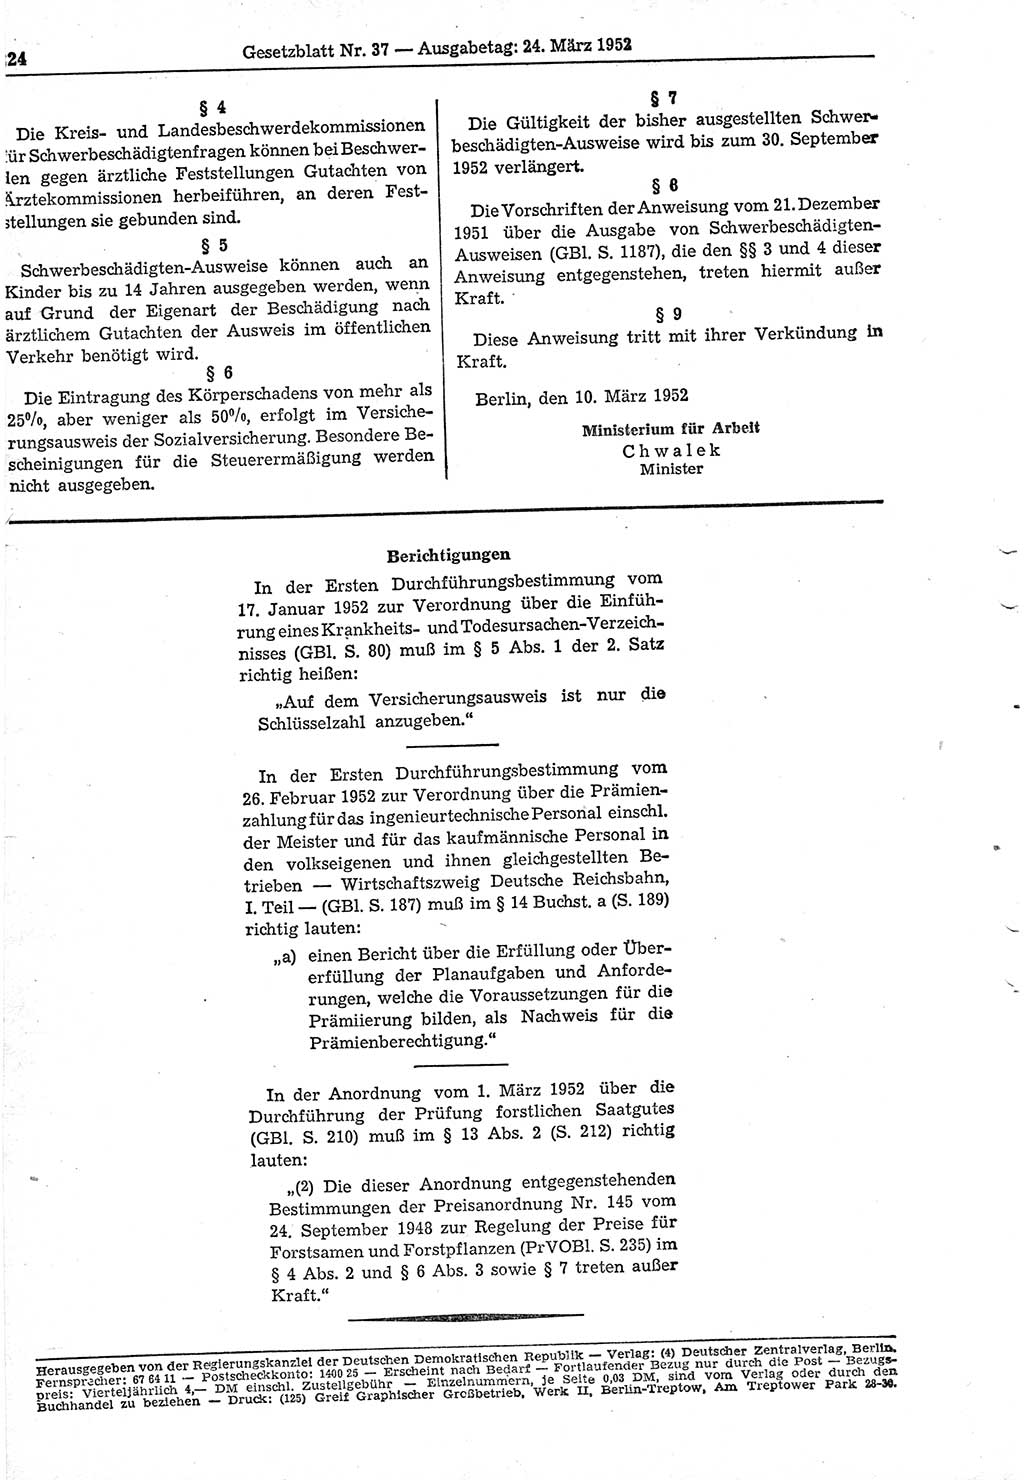 Gesetzblatt (GBl.) der Deutschen Demokratischen Republik (DDR) 1952, Seite 224 (GBl. DDR 1952, S. 224)